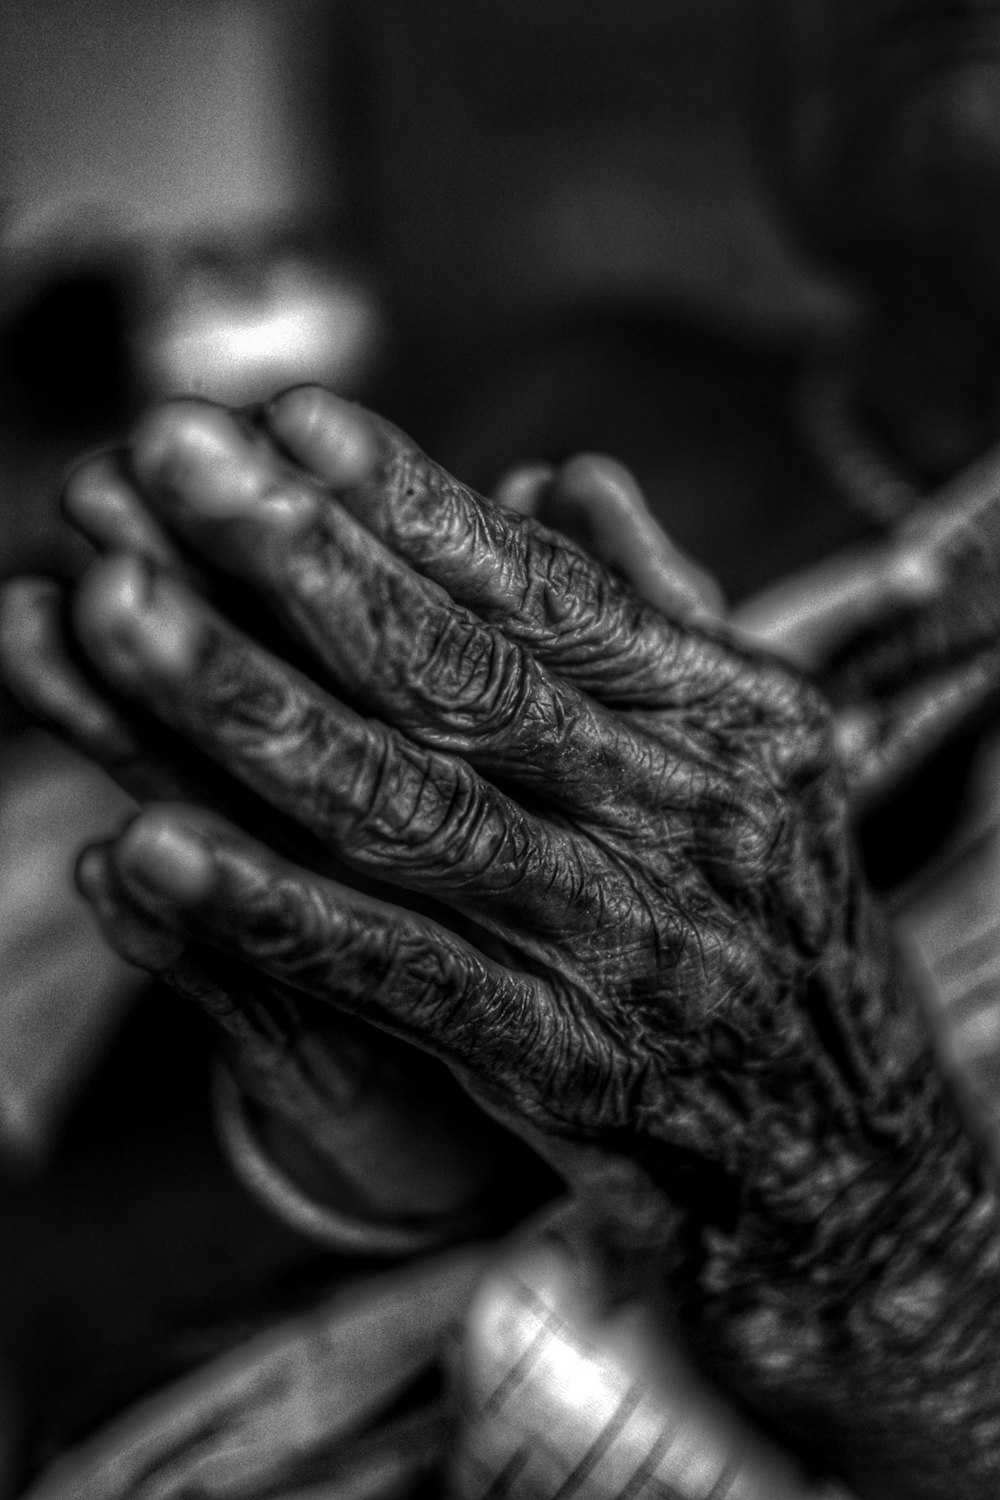 Fotografía en escala de grises de las manos de una persona